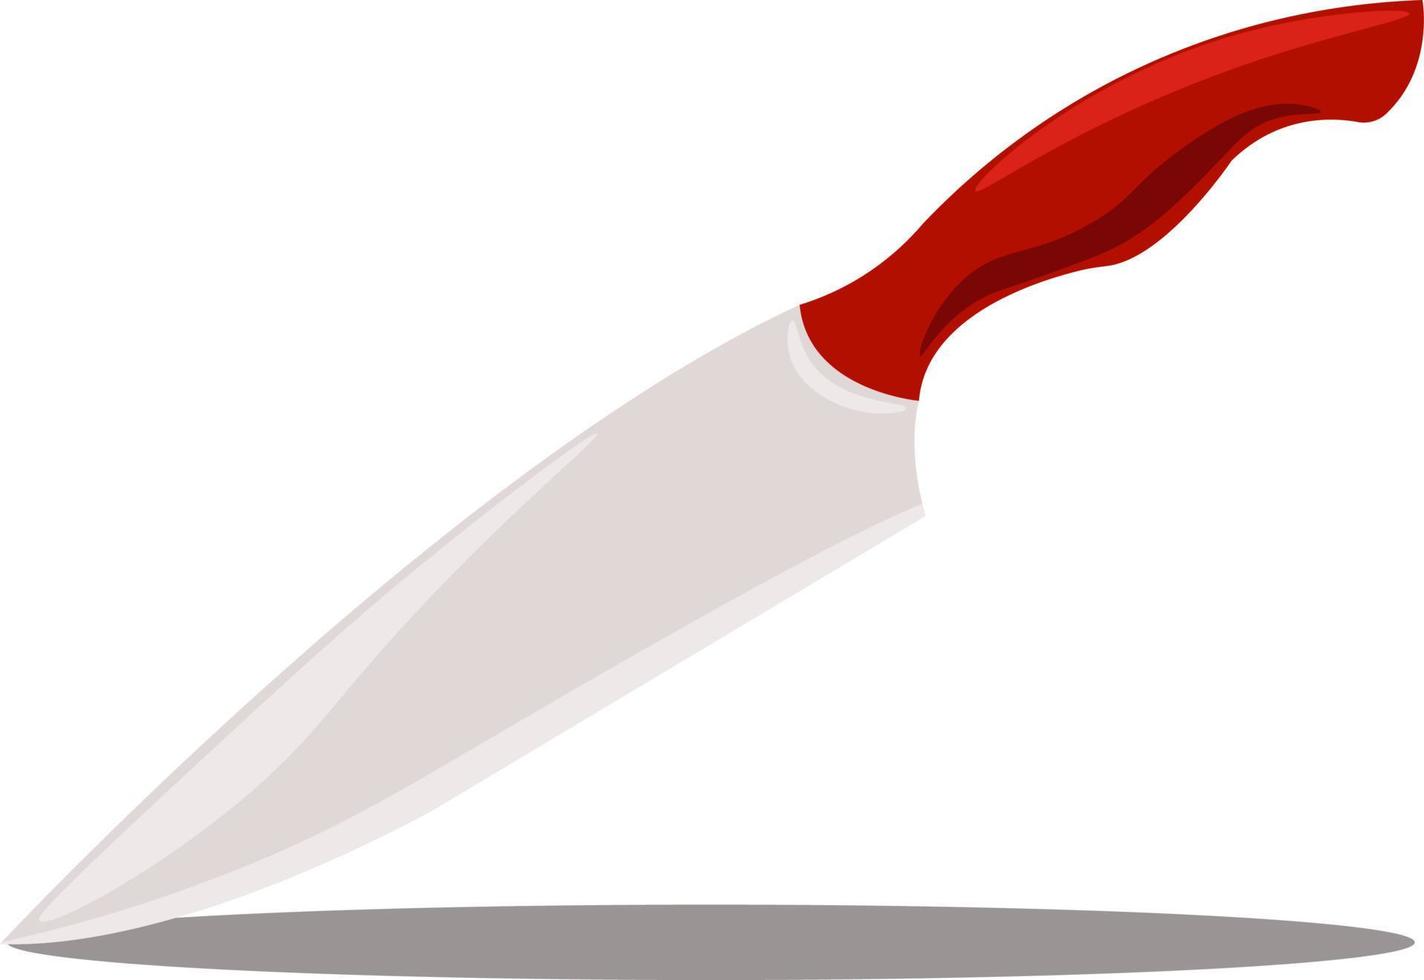 Messer mit rotem Griff, Illustration, Vektor auf weißem Hintergrund.